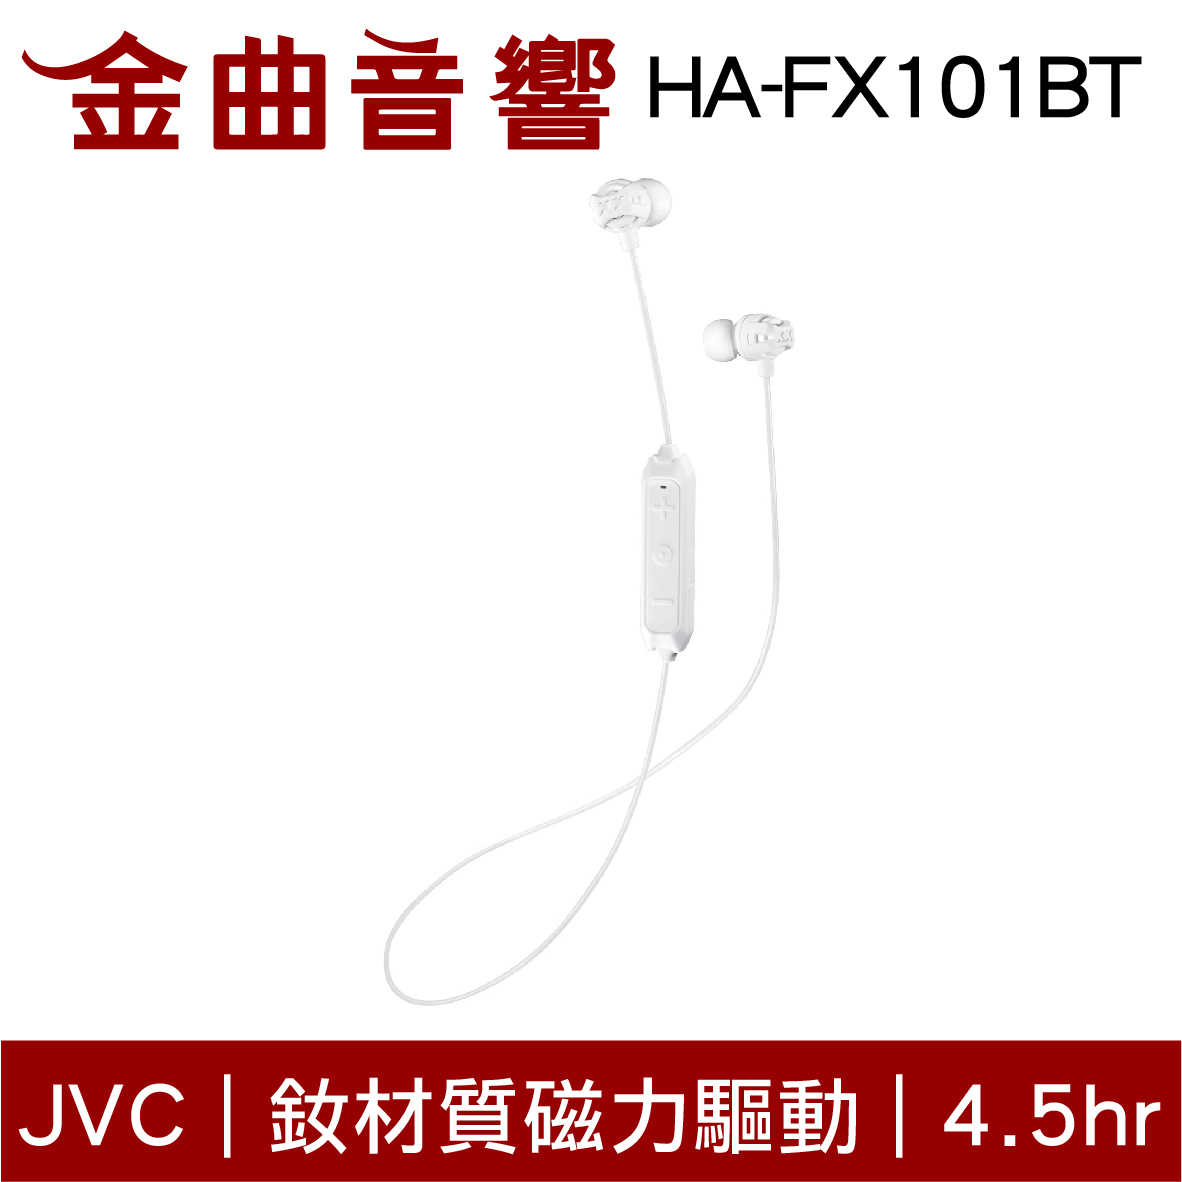 JVC HA-FX101BT 白色 釹材質磁力驅動 藍芽4.1 無線耳機 | 金曲音響